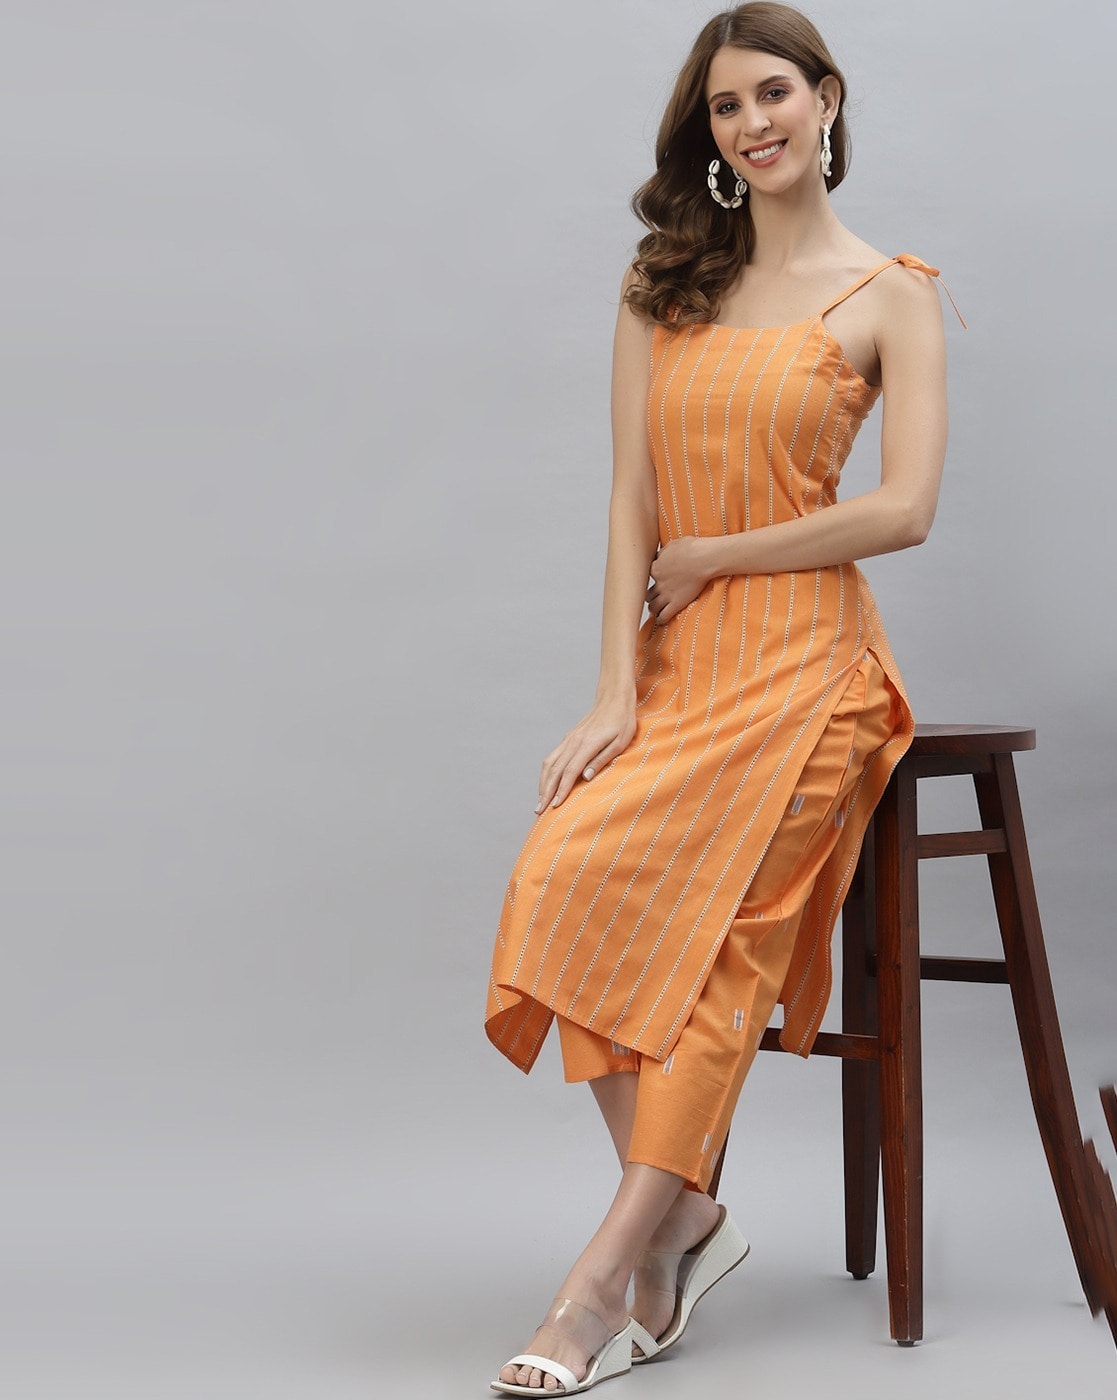 Orange Kids Cotton Sleeveless Kurti, Size: Medium at Rs 200/piece in Kolkata